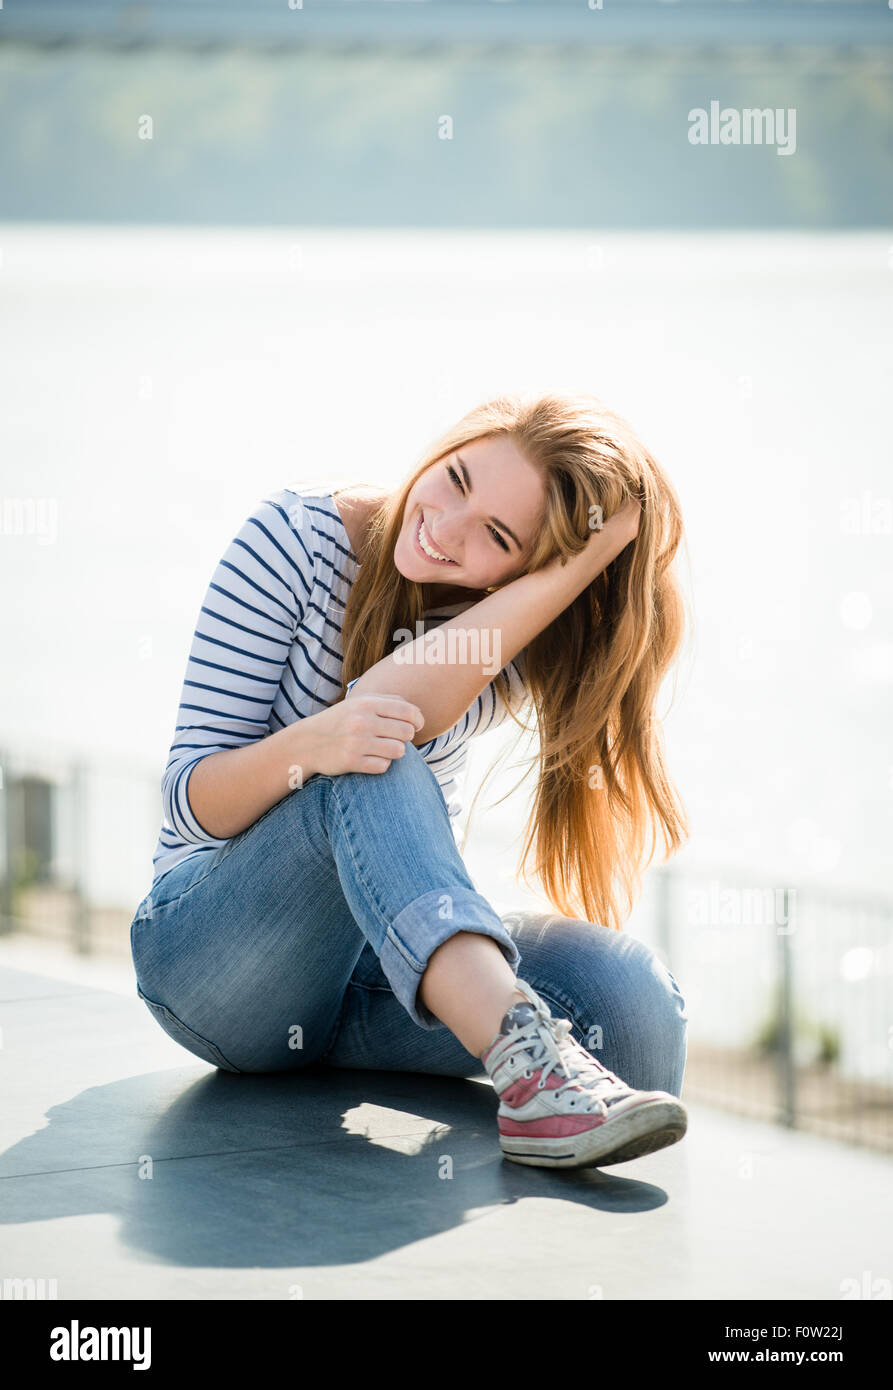 Adolescente ritratto - ragazza sorridente outdoor sulla giornata di sole Foto Stock